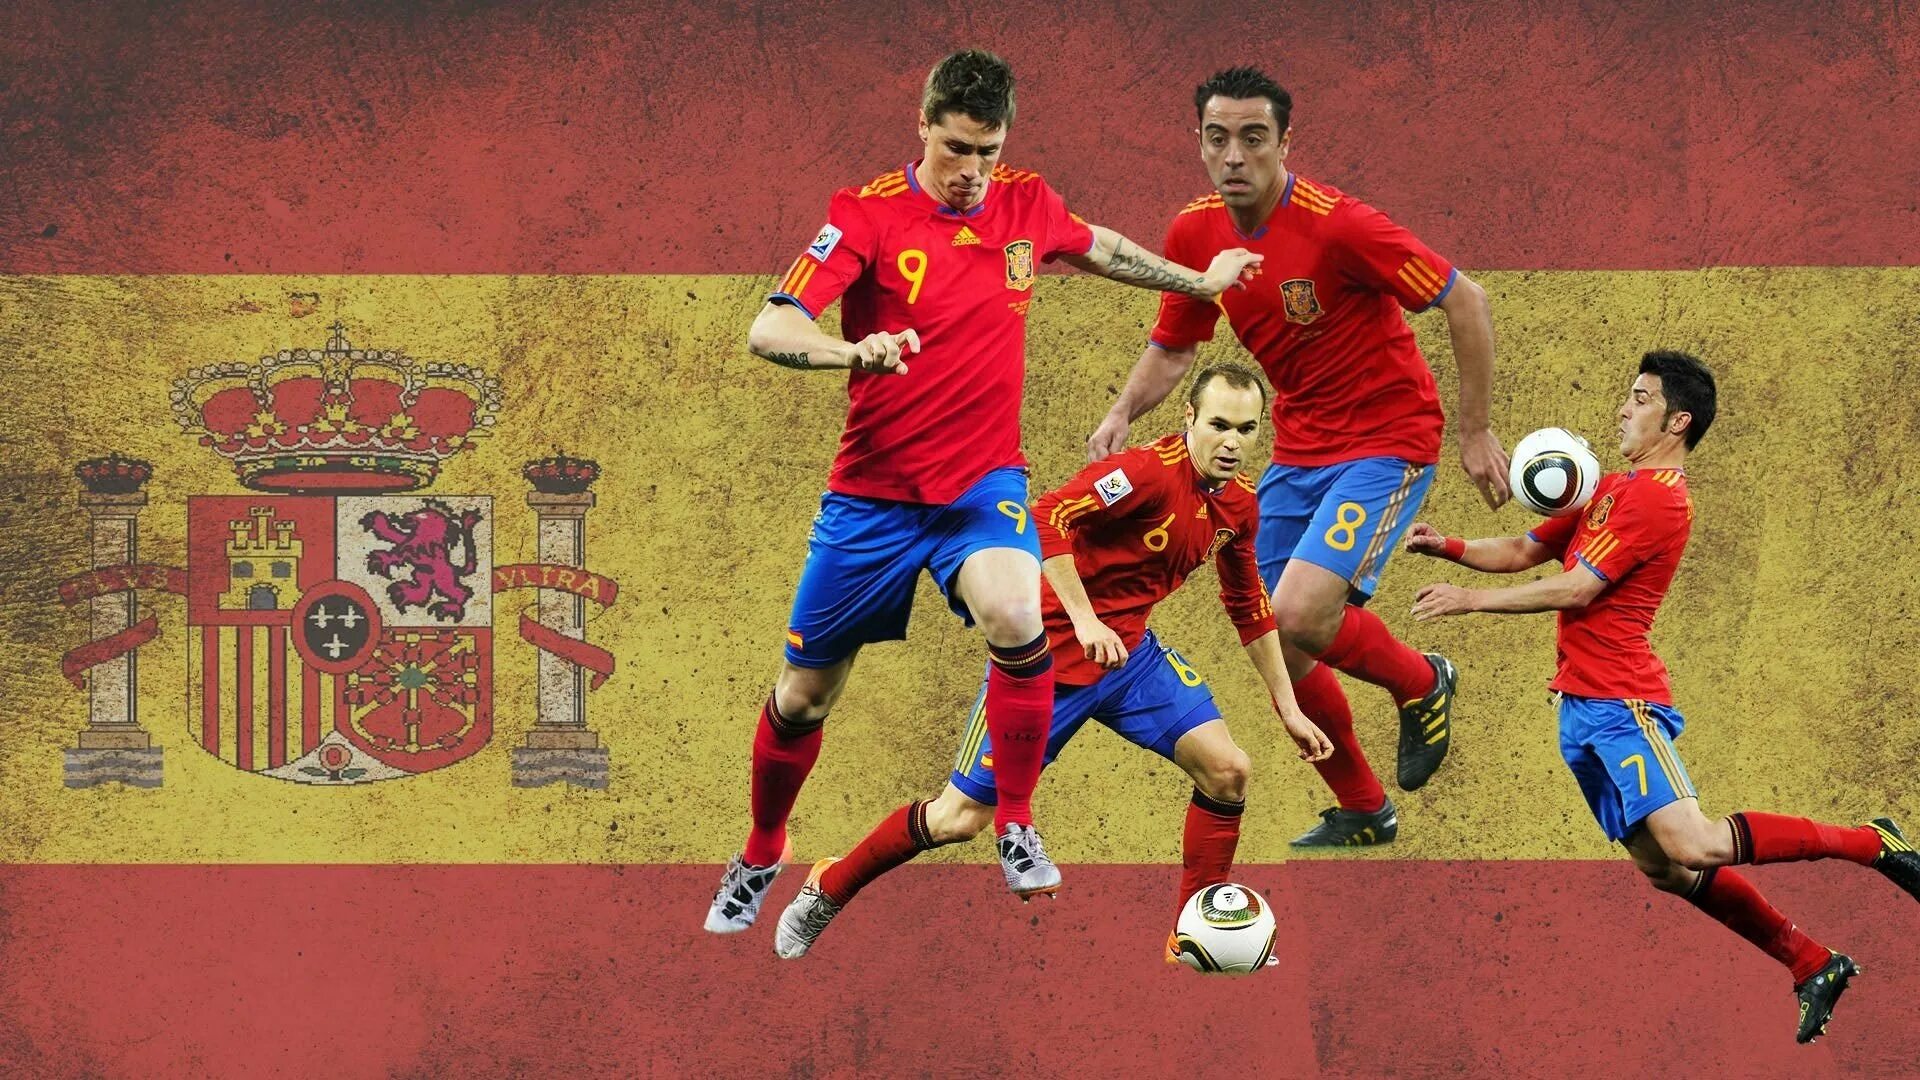 Испания страна футбола. Футбольные обои. Испанский футбол. Обои для футболиста. Картинки на рабочий стол футбол.